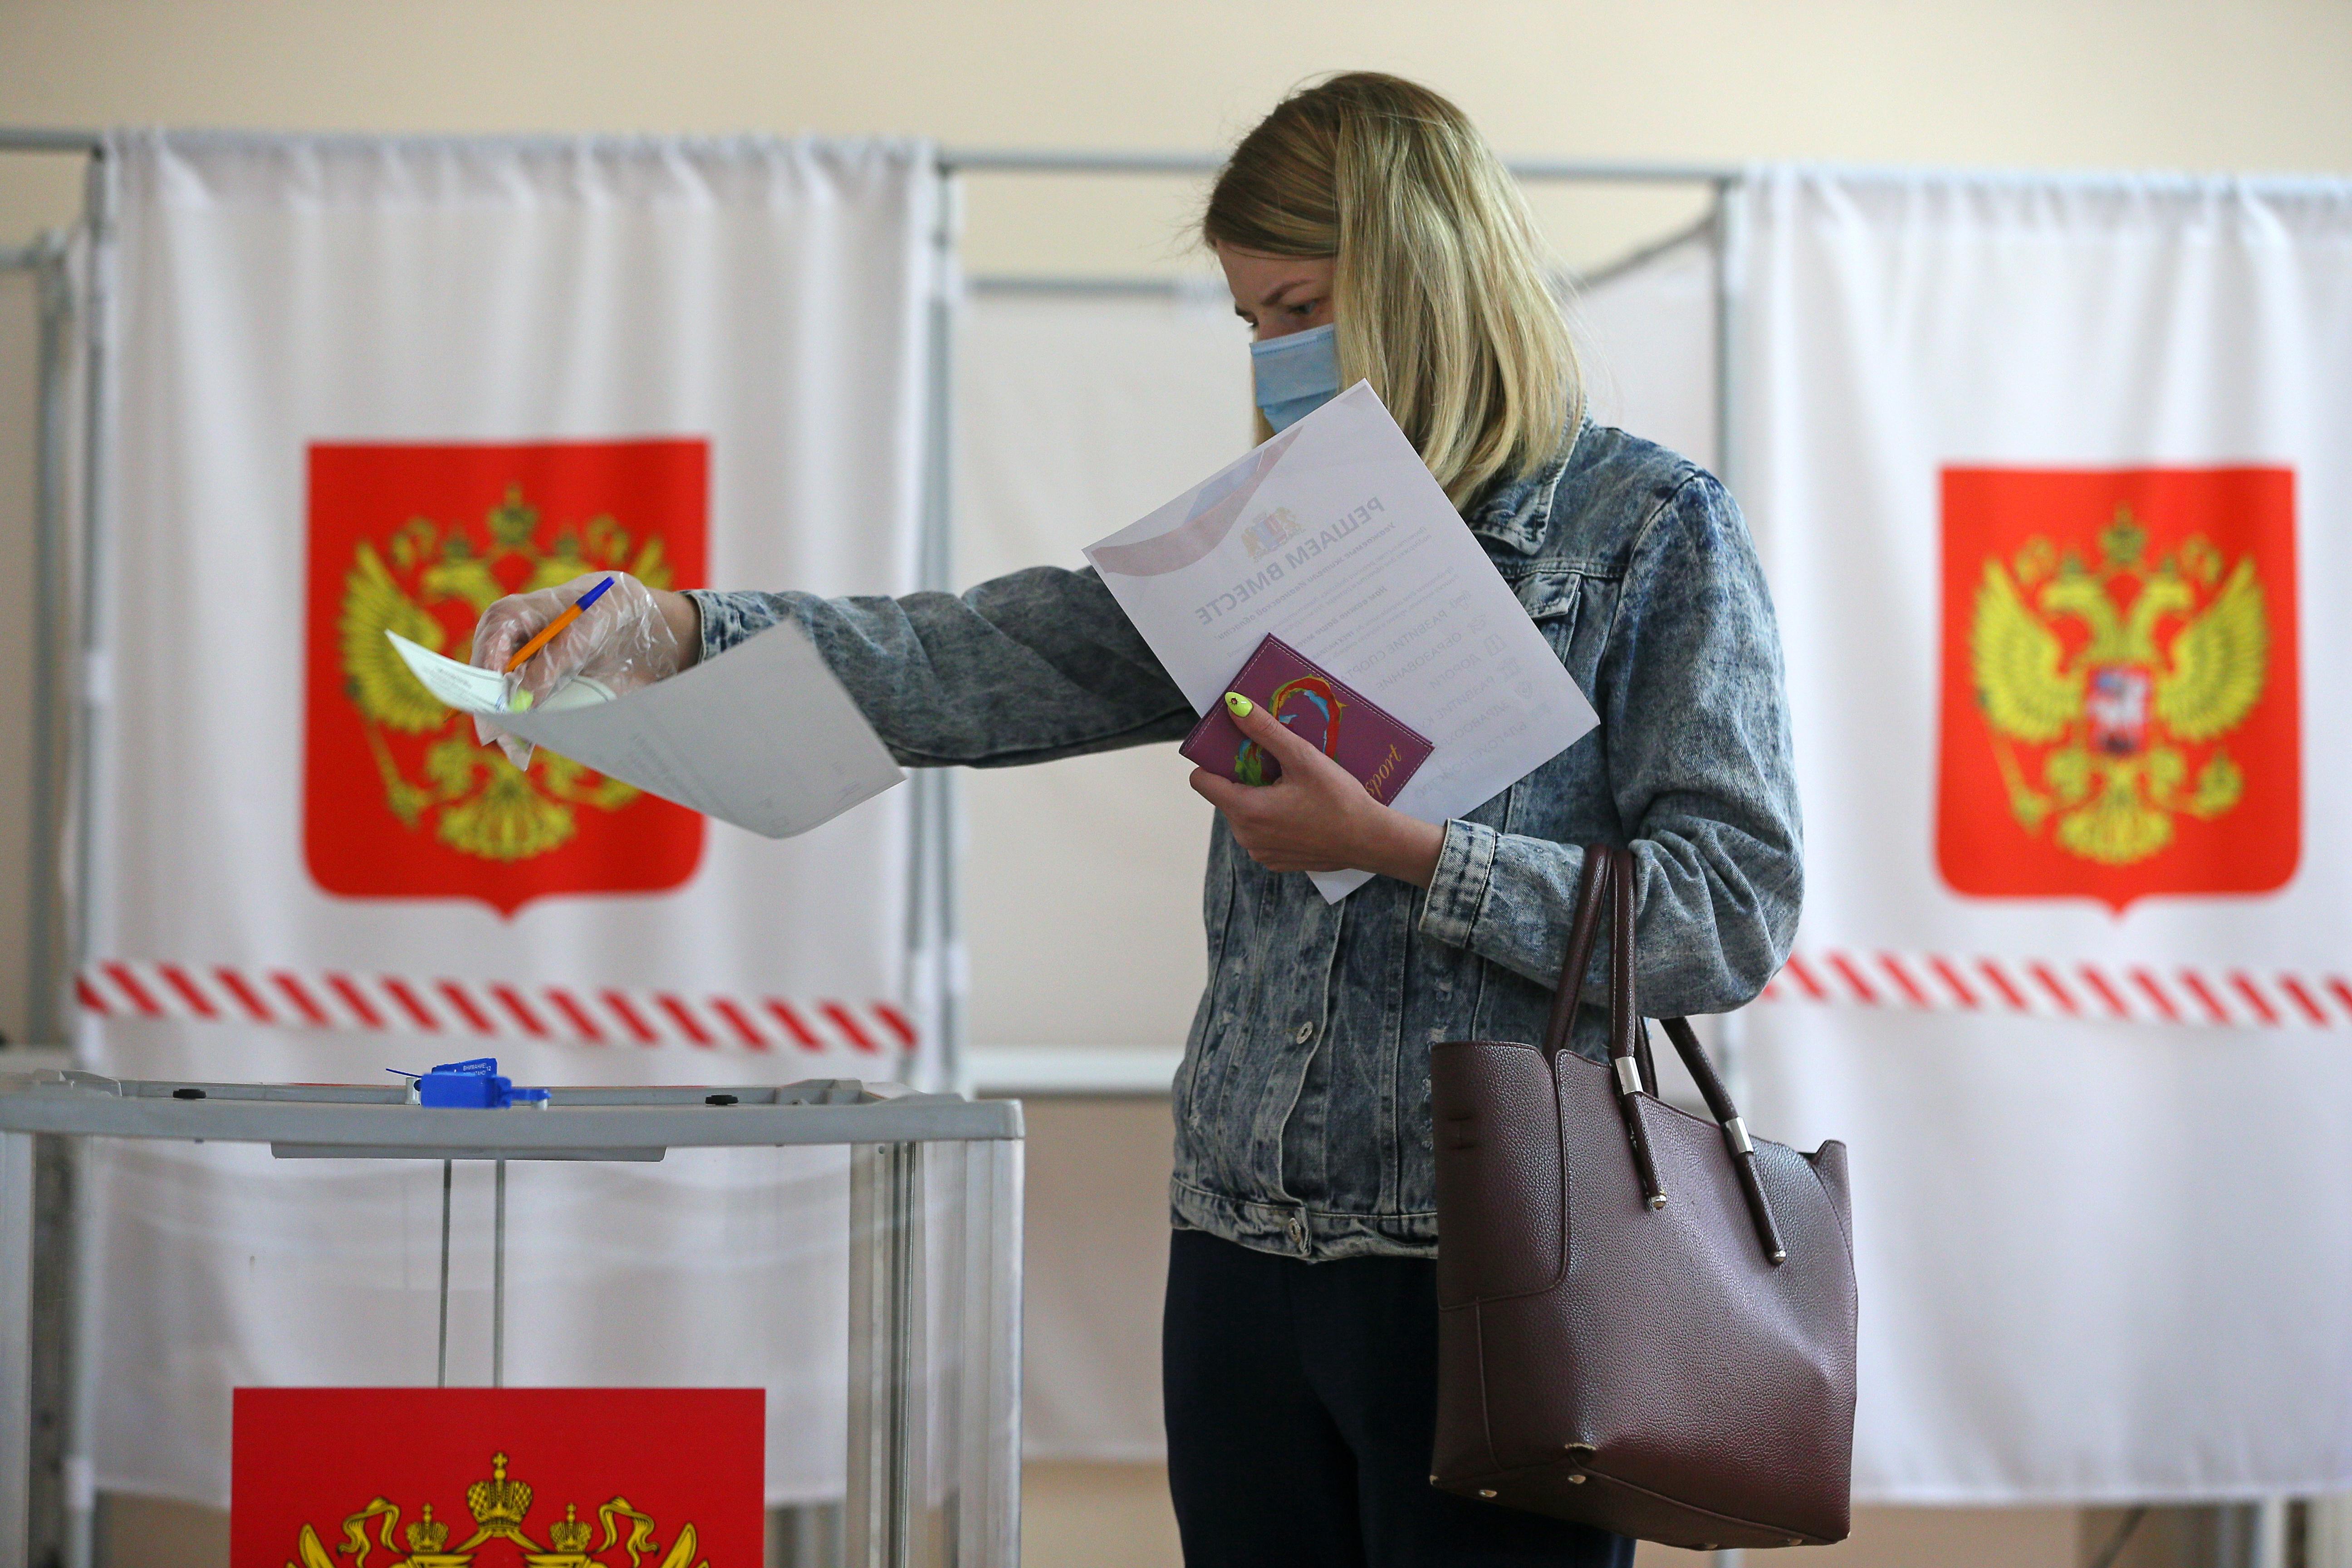 Первыми на избирательный участок пришли. Выборы. Люди голосуют. Люди голосуют на выборах. Выборы в России.